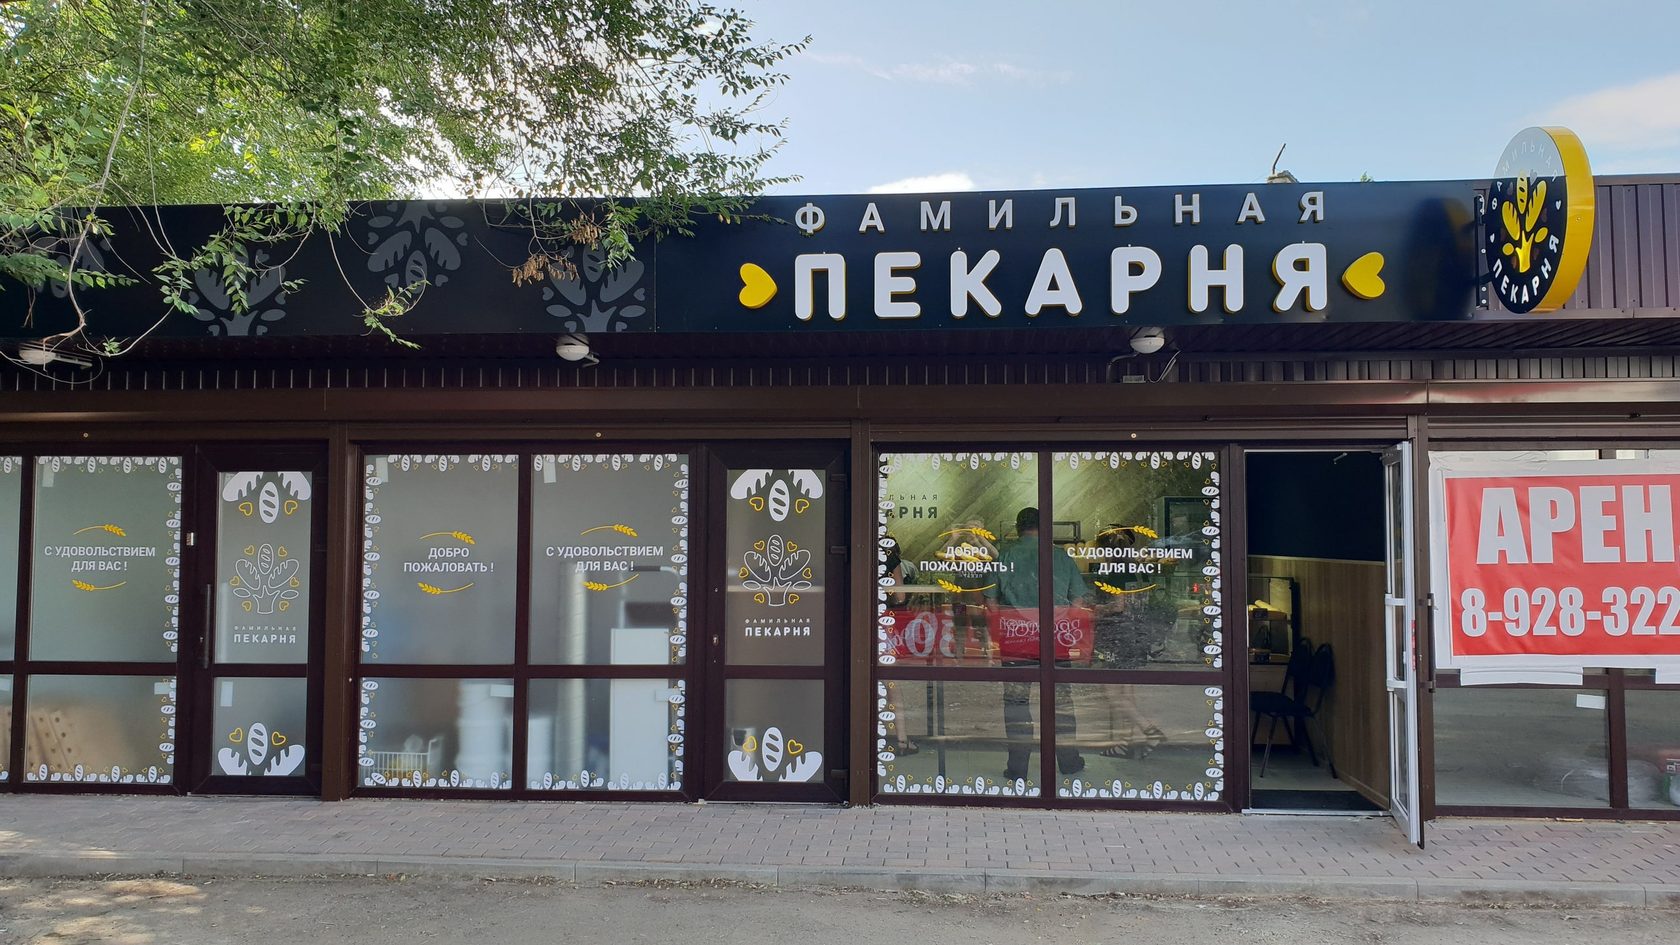 Фамильная пекарня Невинномысск